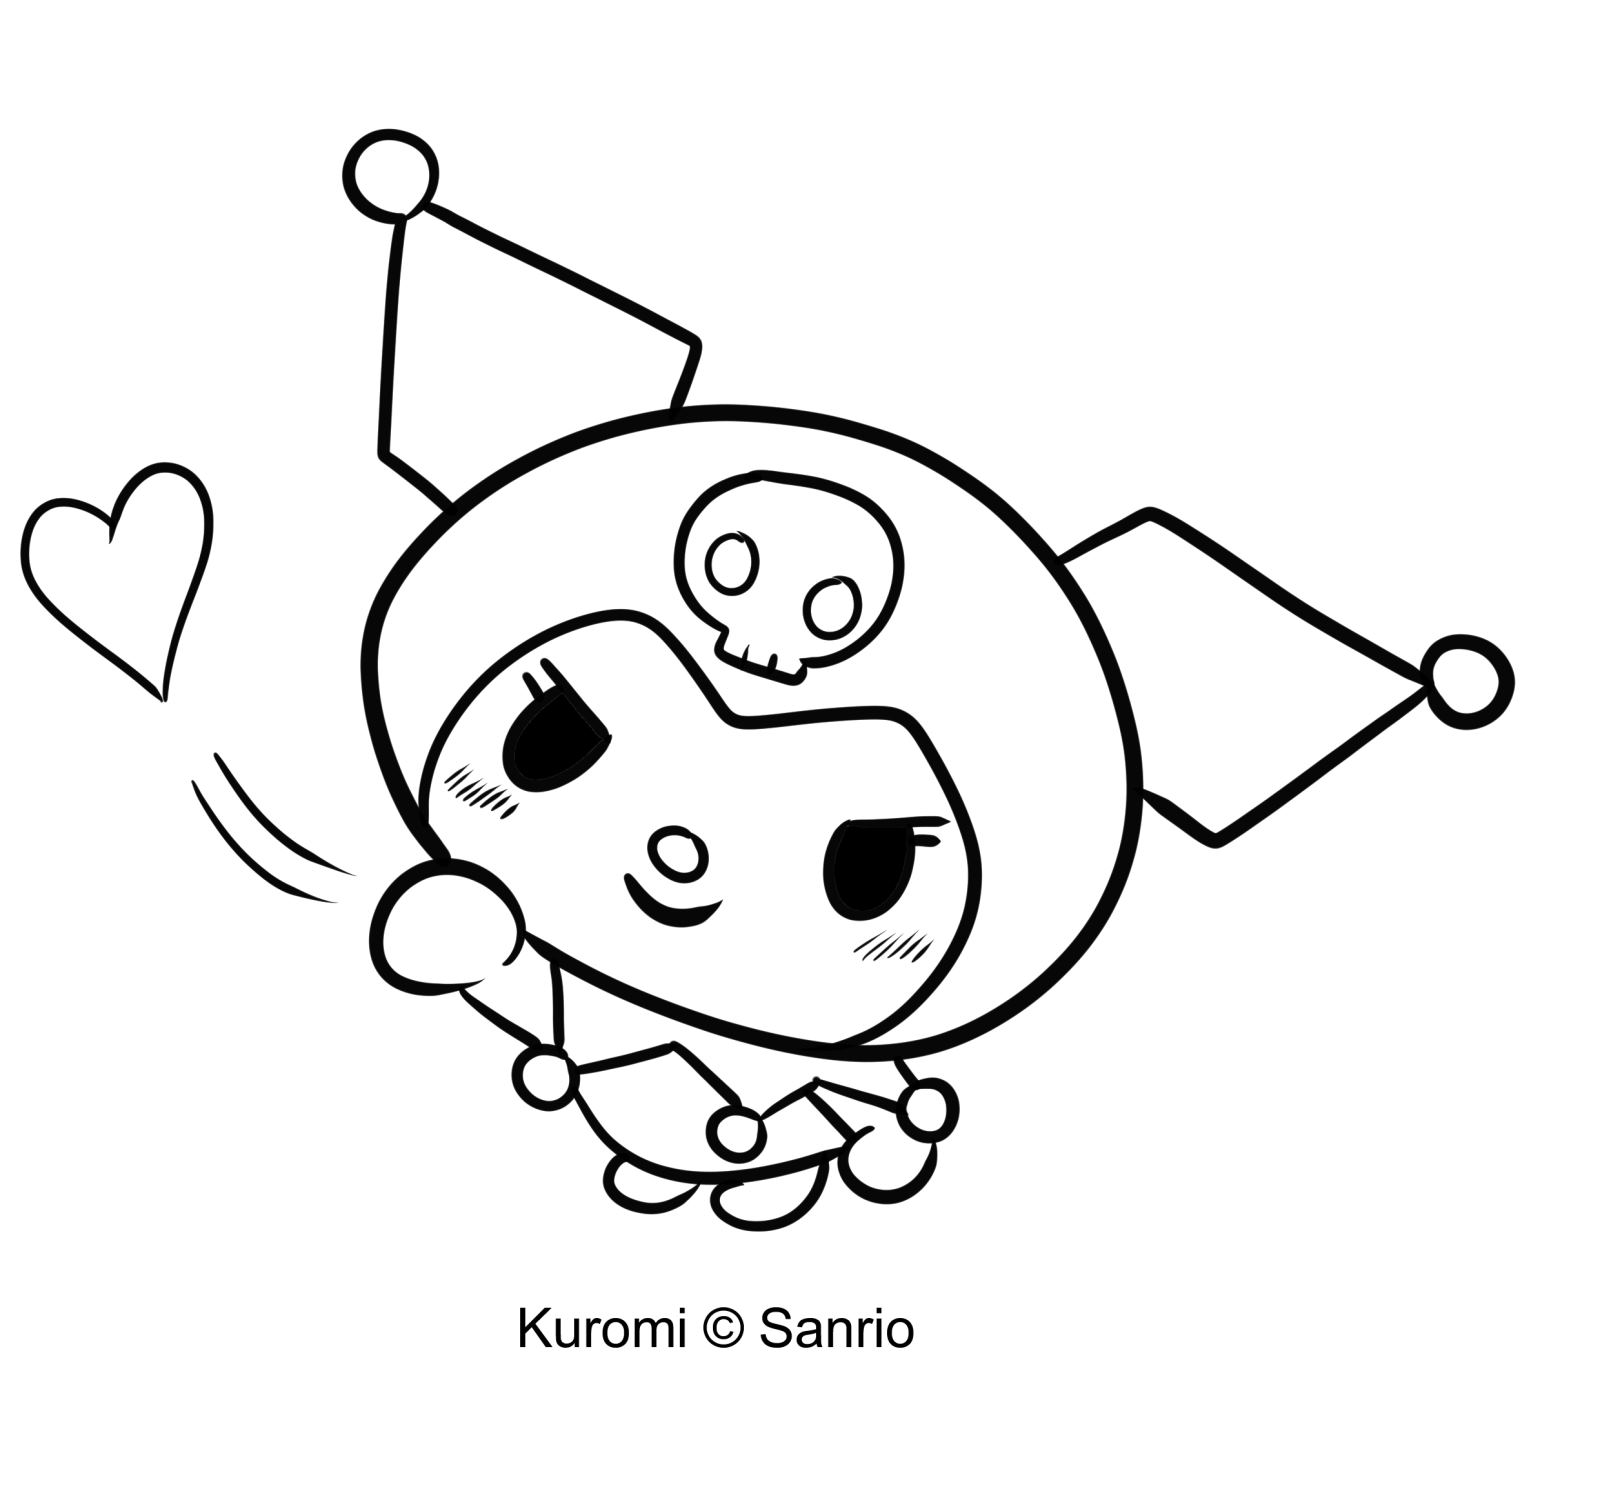 Розмальовка Куромі 08 із "Моєї мелодії" для друку та розмальовування